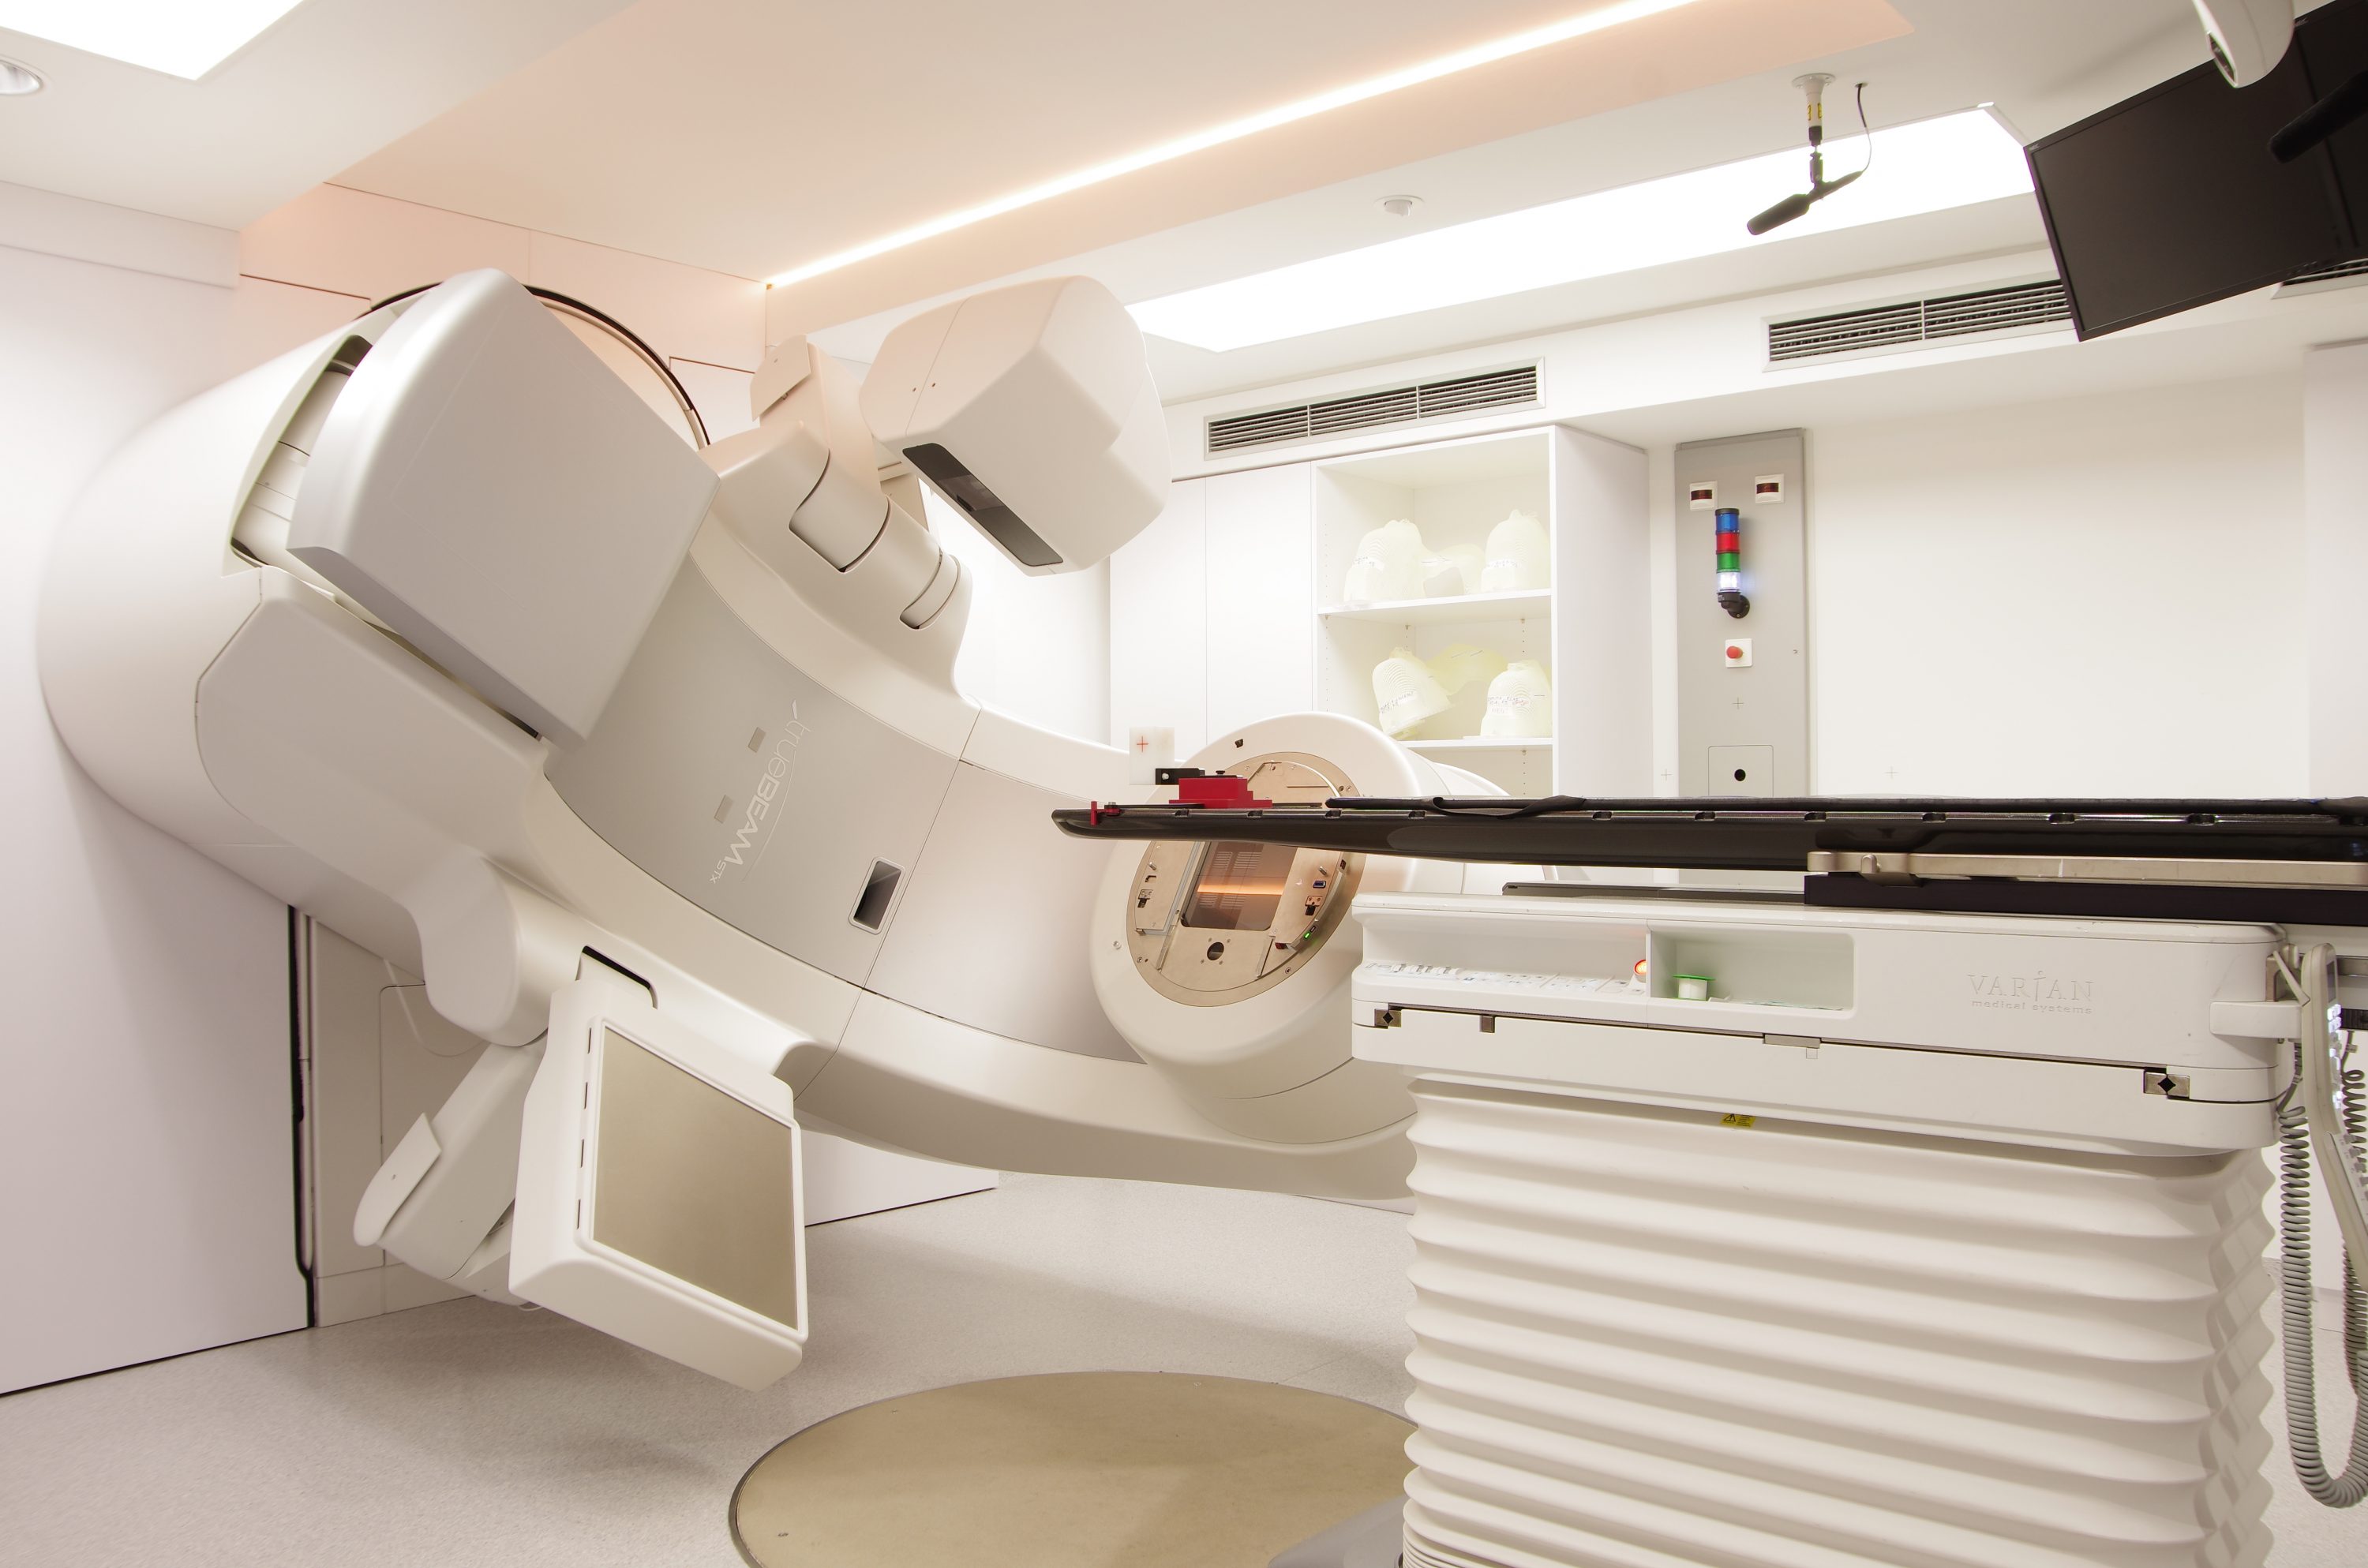 MED-SERVICE – Dr. Dolling & Co. GmbH: Radiologische Allianz Hamburg – Umbau einer Strahlentherapie